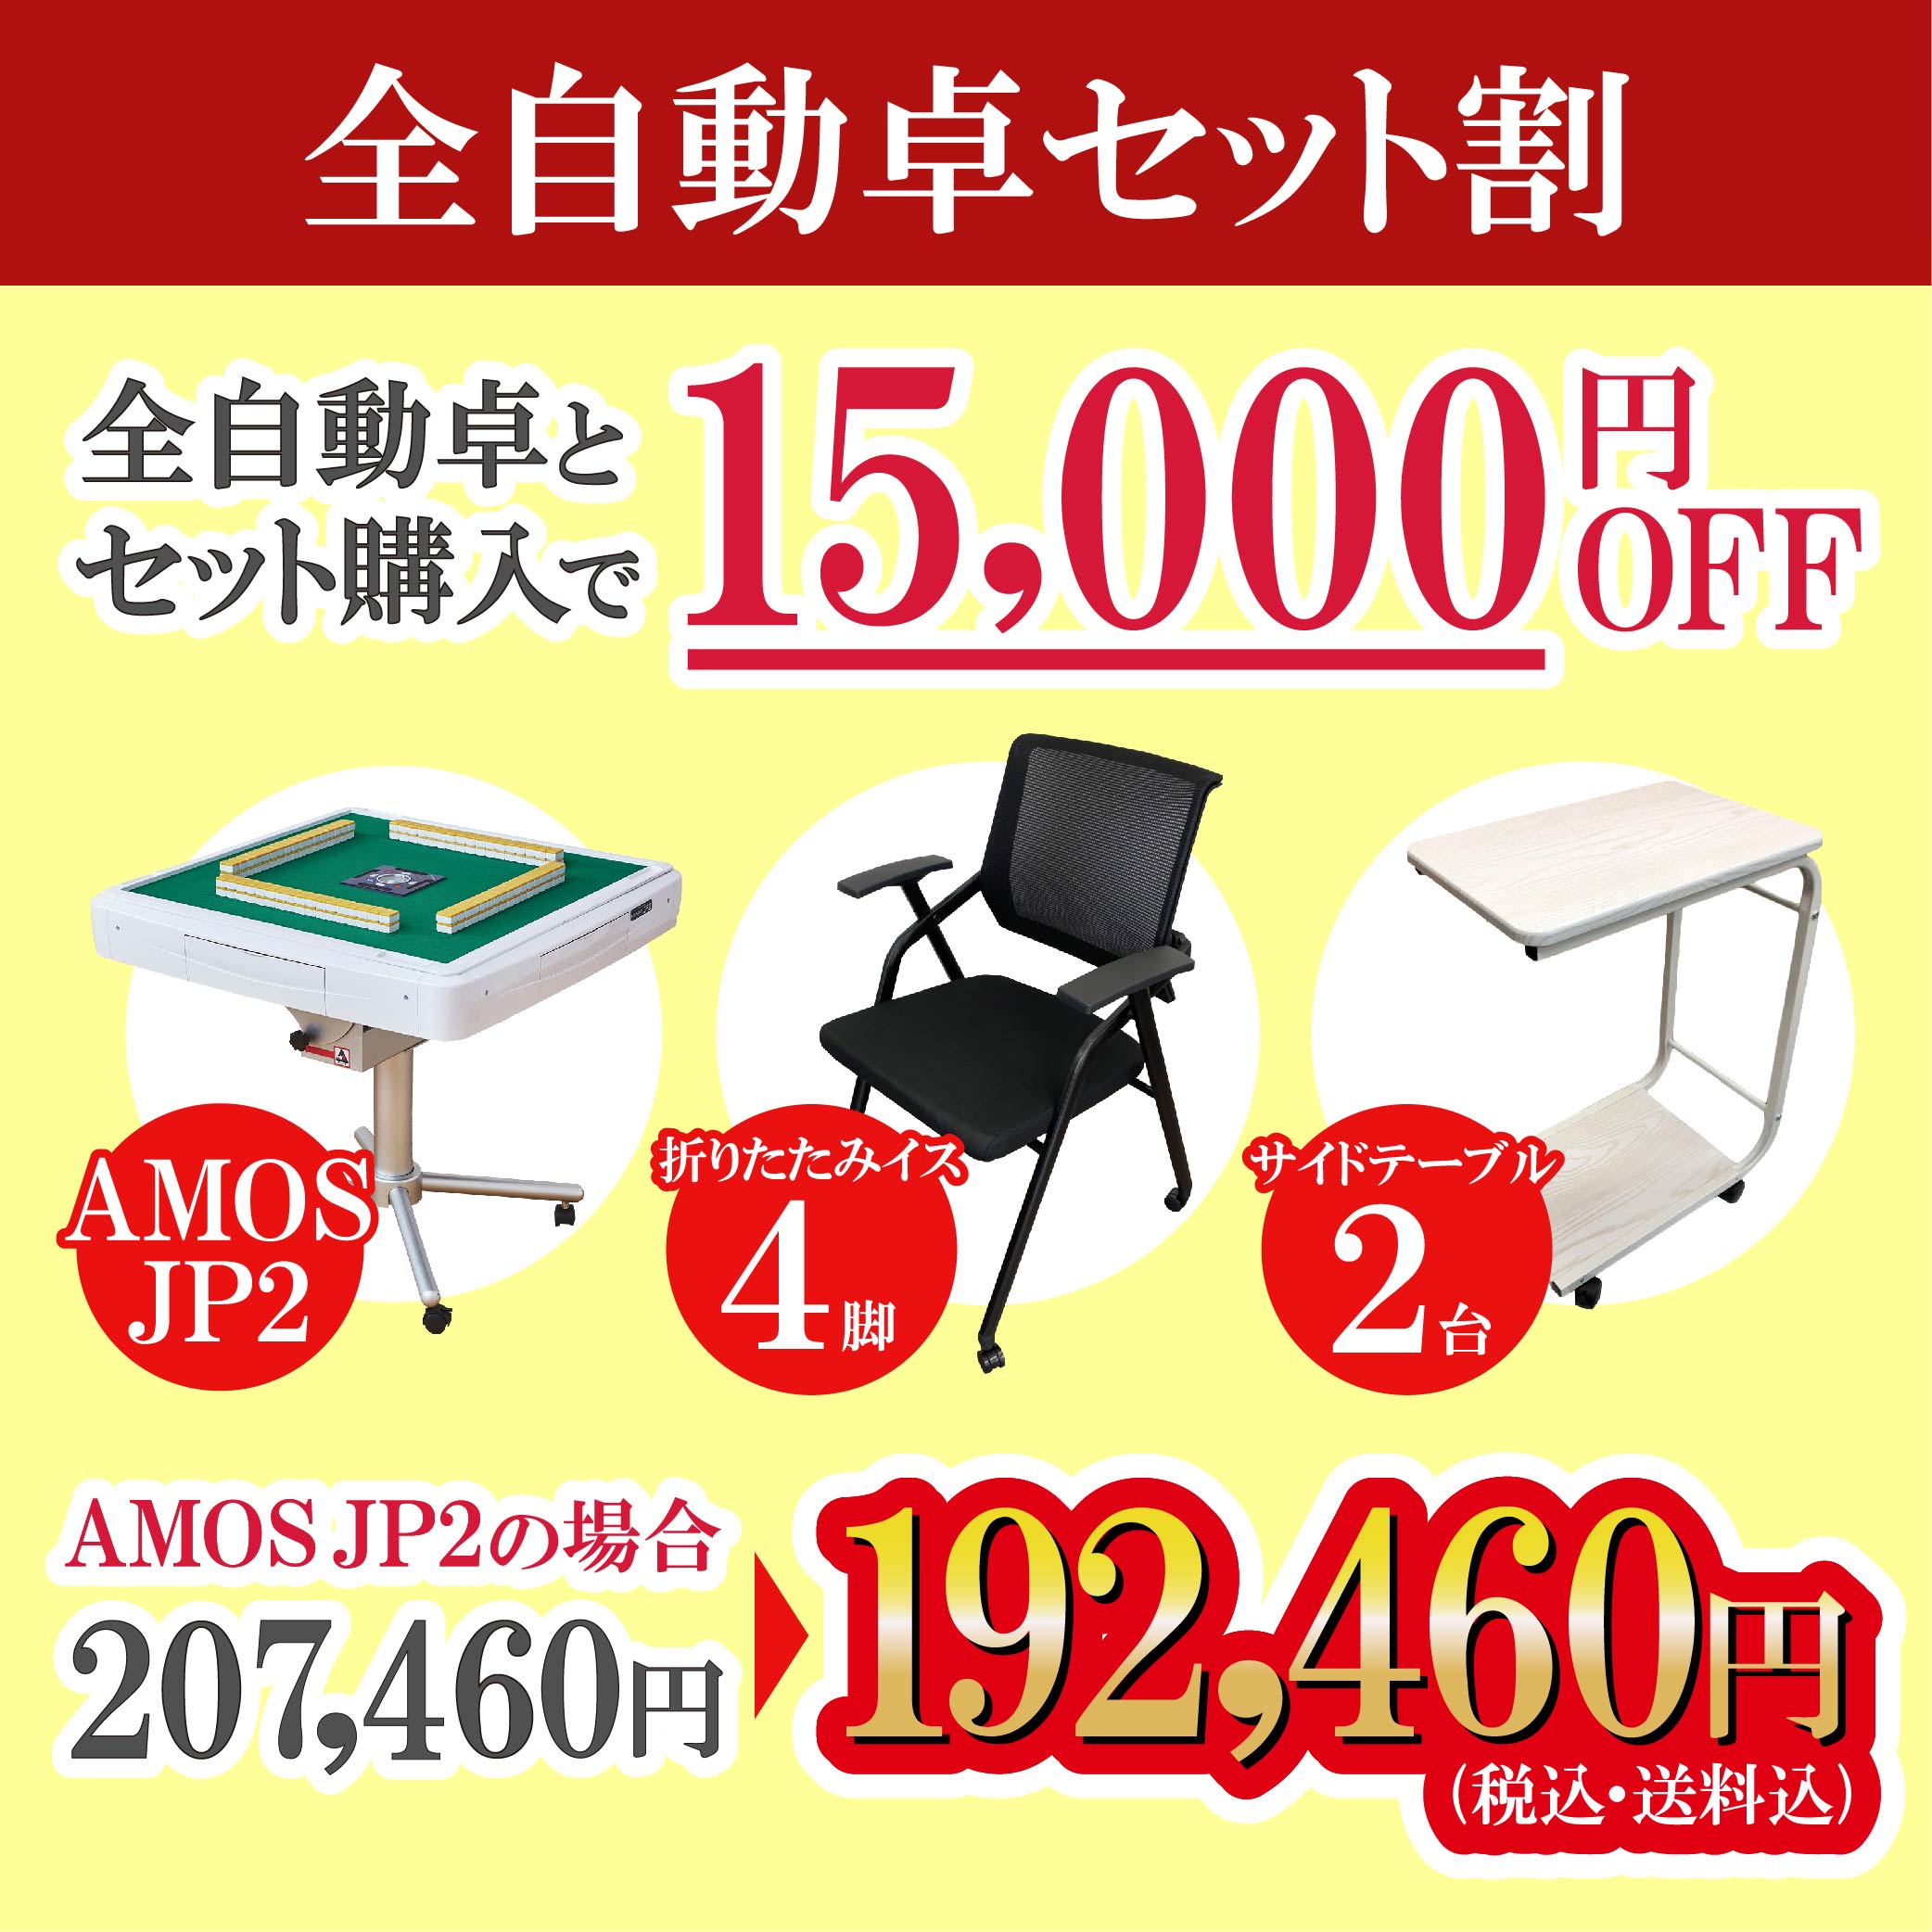 AMOS JP2 折りたたみタイプ | AMOS公式ショップ